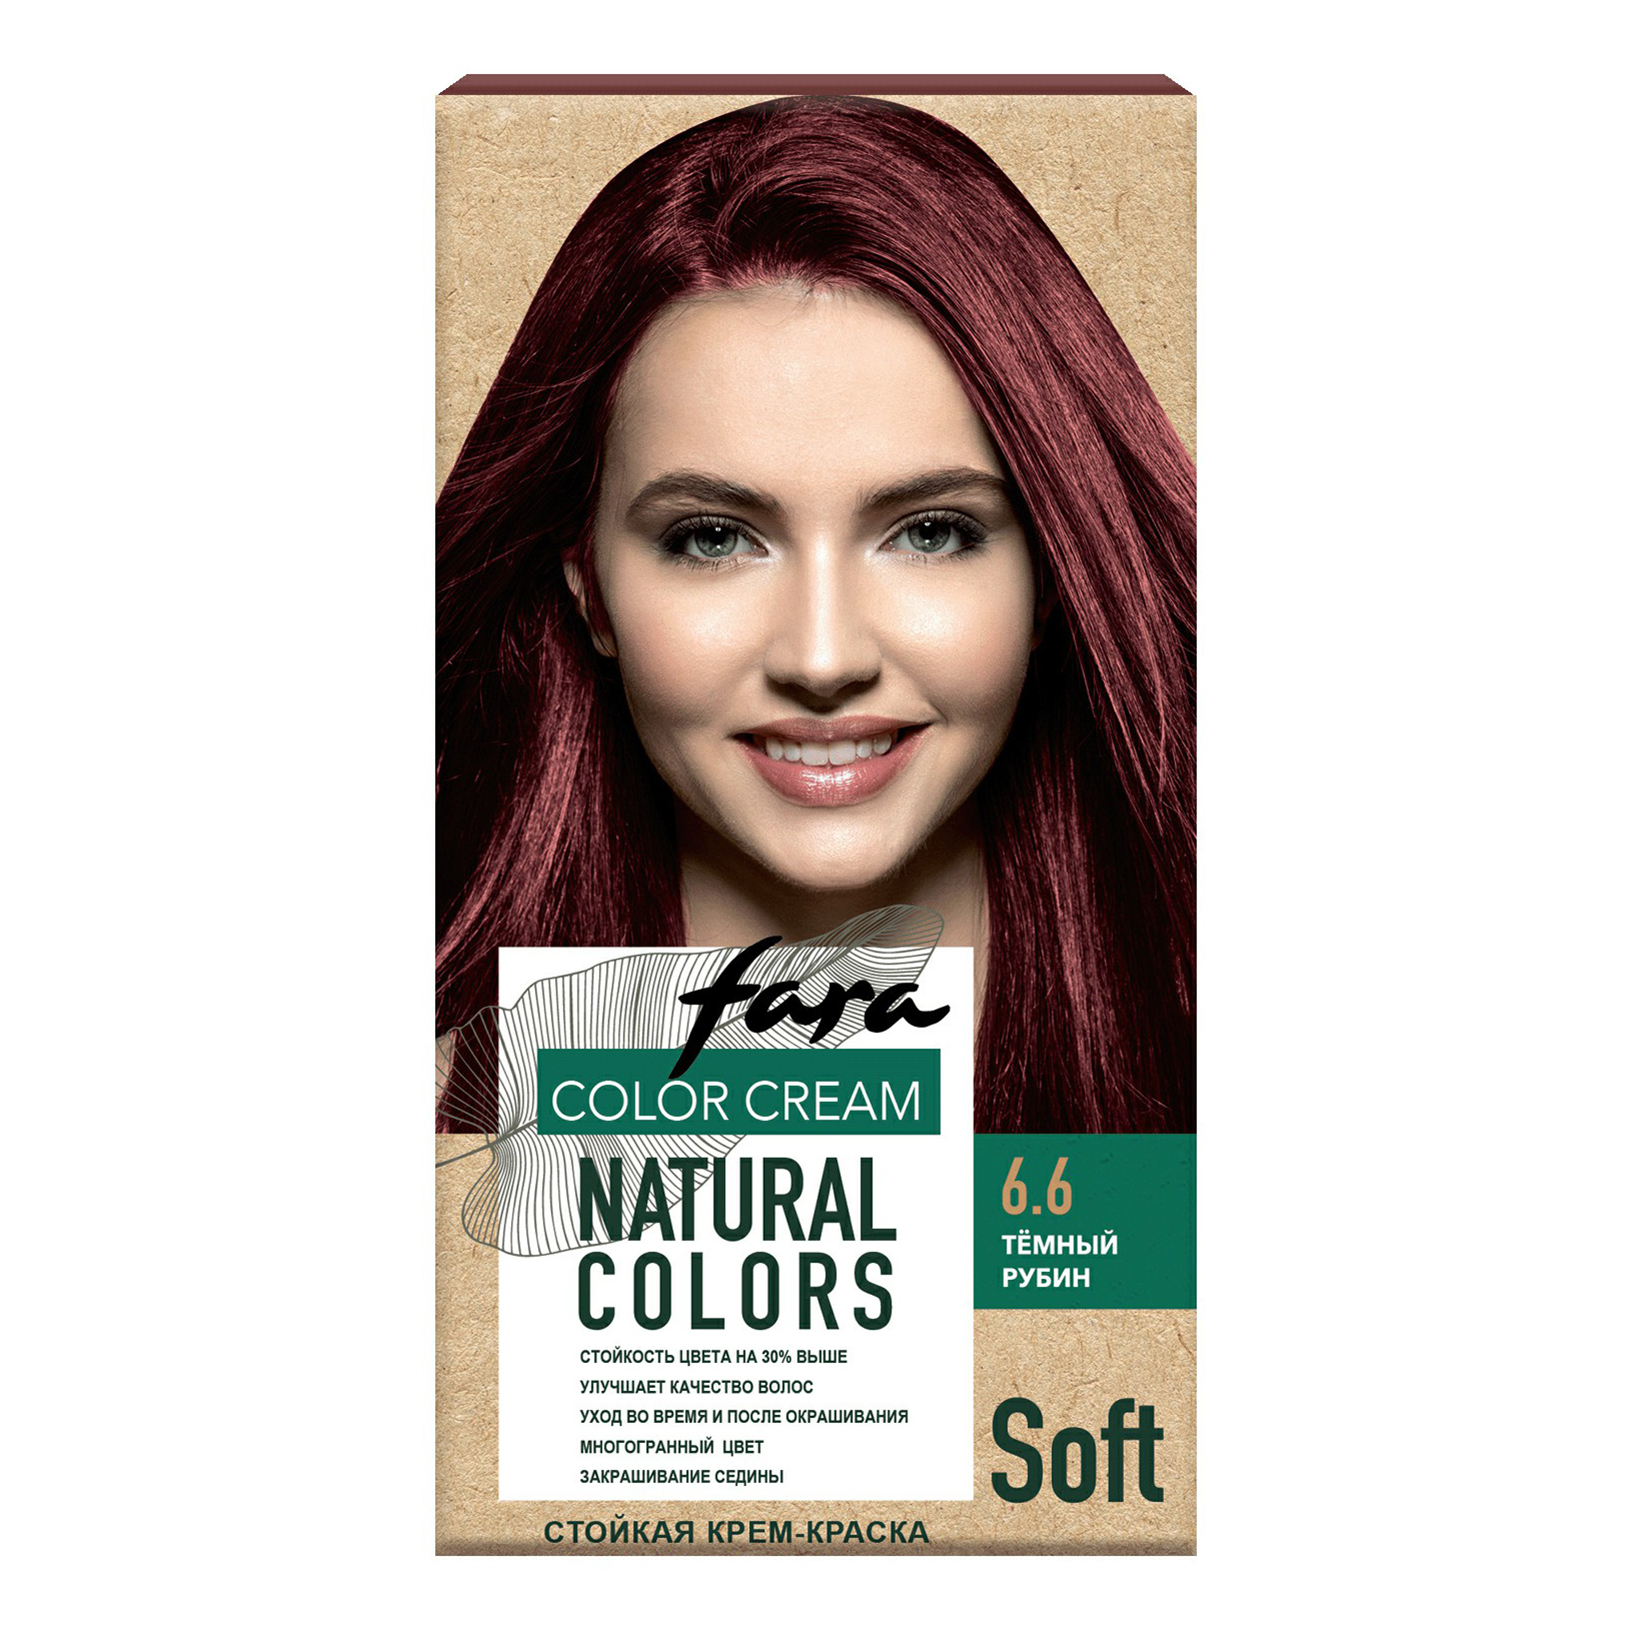 Крем-краска для волос Fara Natural Colors Soft 324 Темный рубин 150 мл краска для волос wella color touch 6 37 темный блонд бронзовый 60 мл